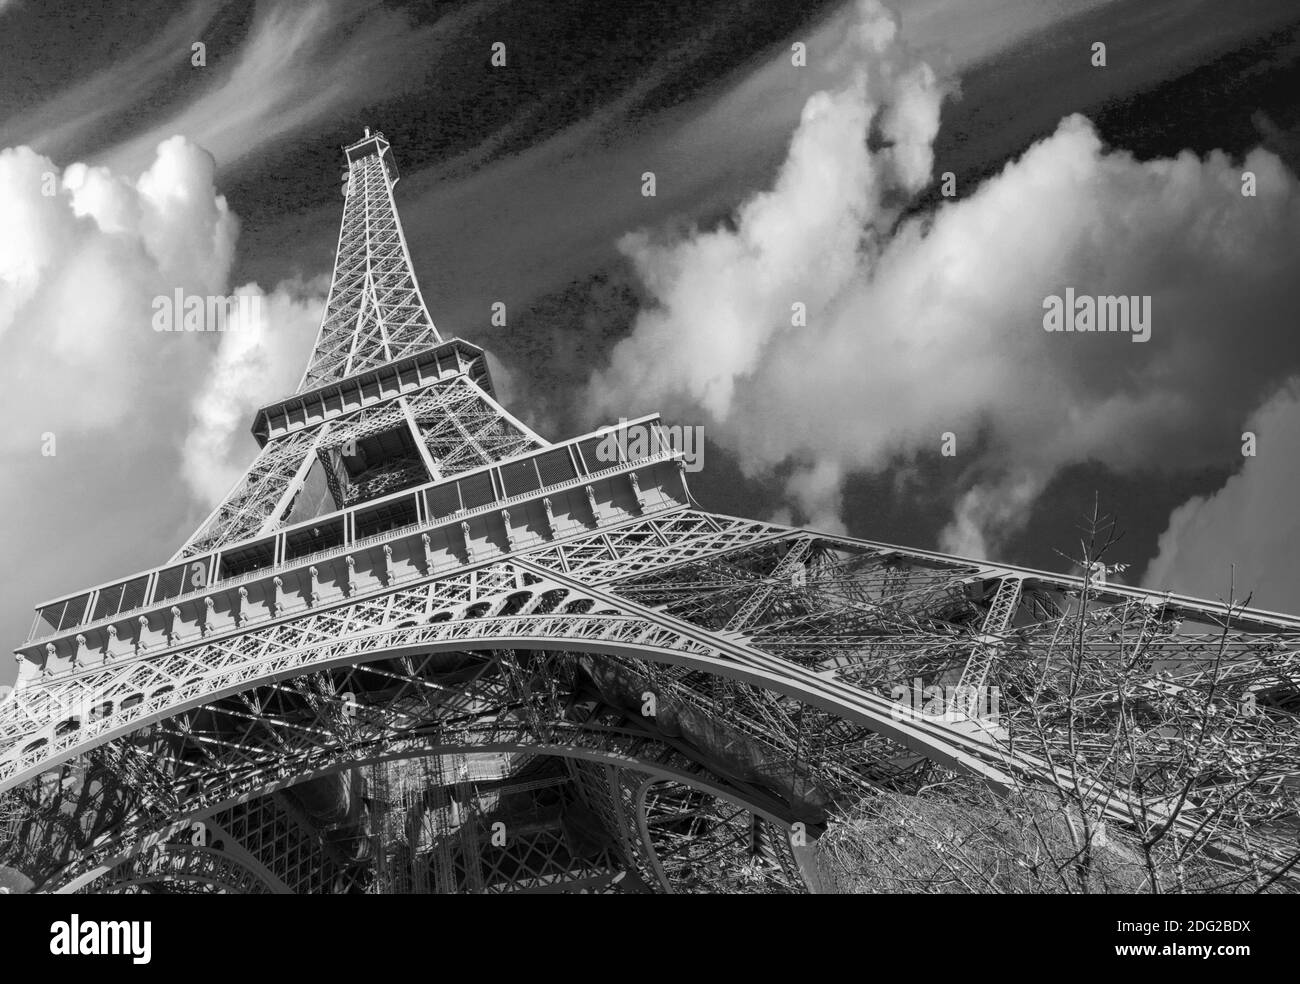 Magnifique vue sur la rue de la Tour Eiffel et la végétation d'hiver - Paris Banque D'Images